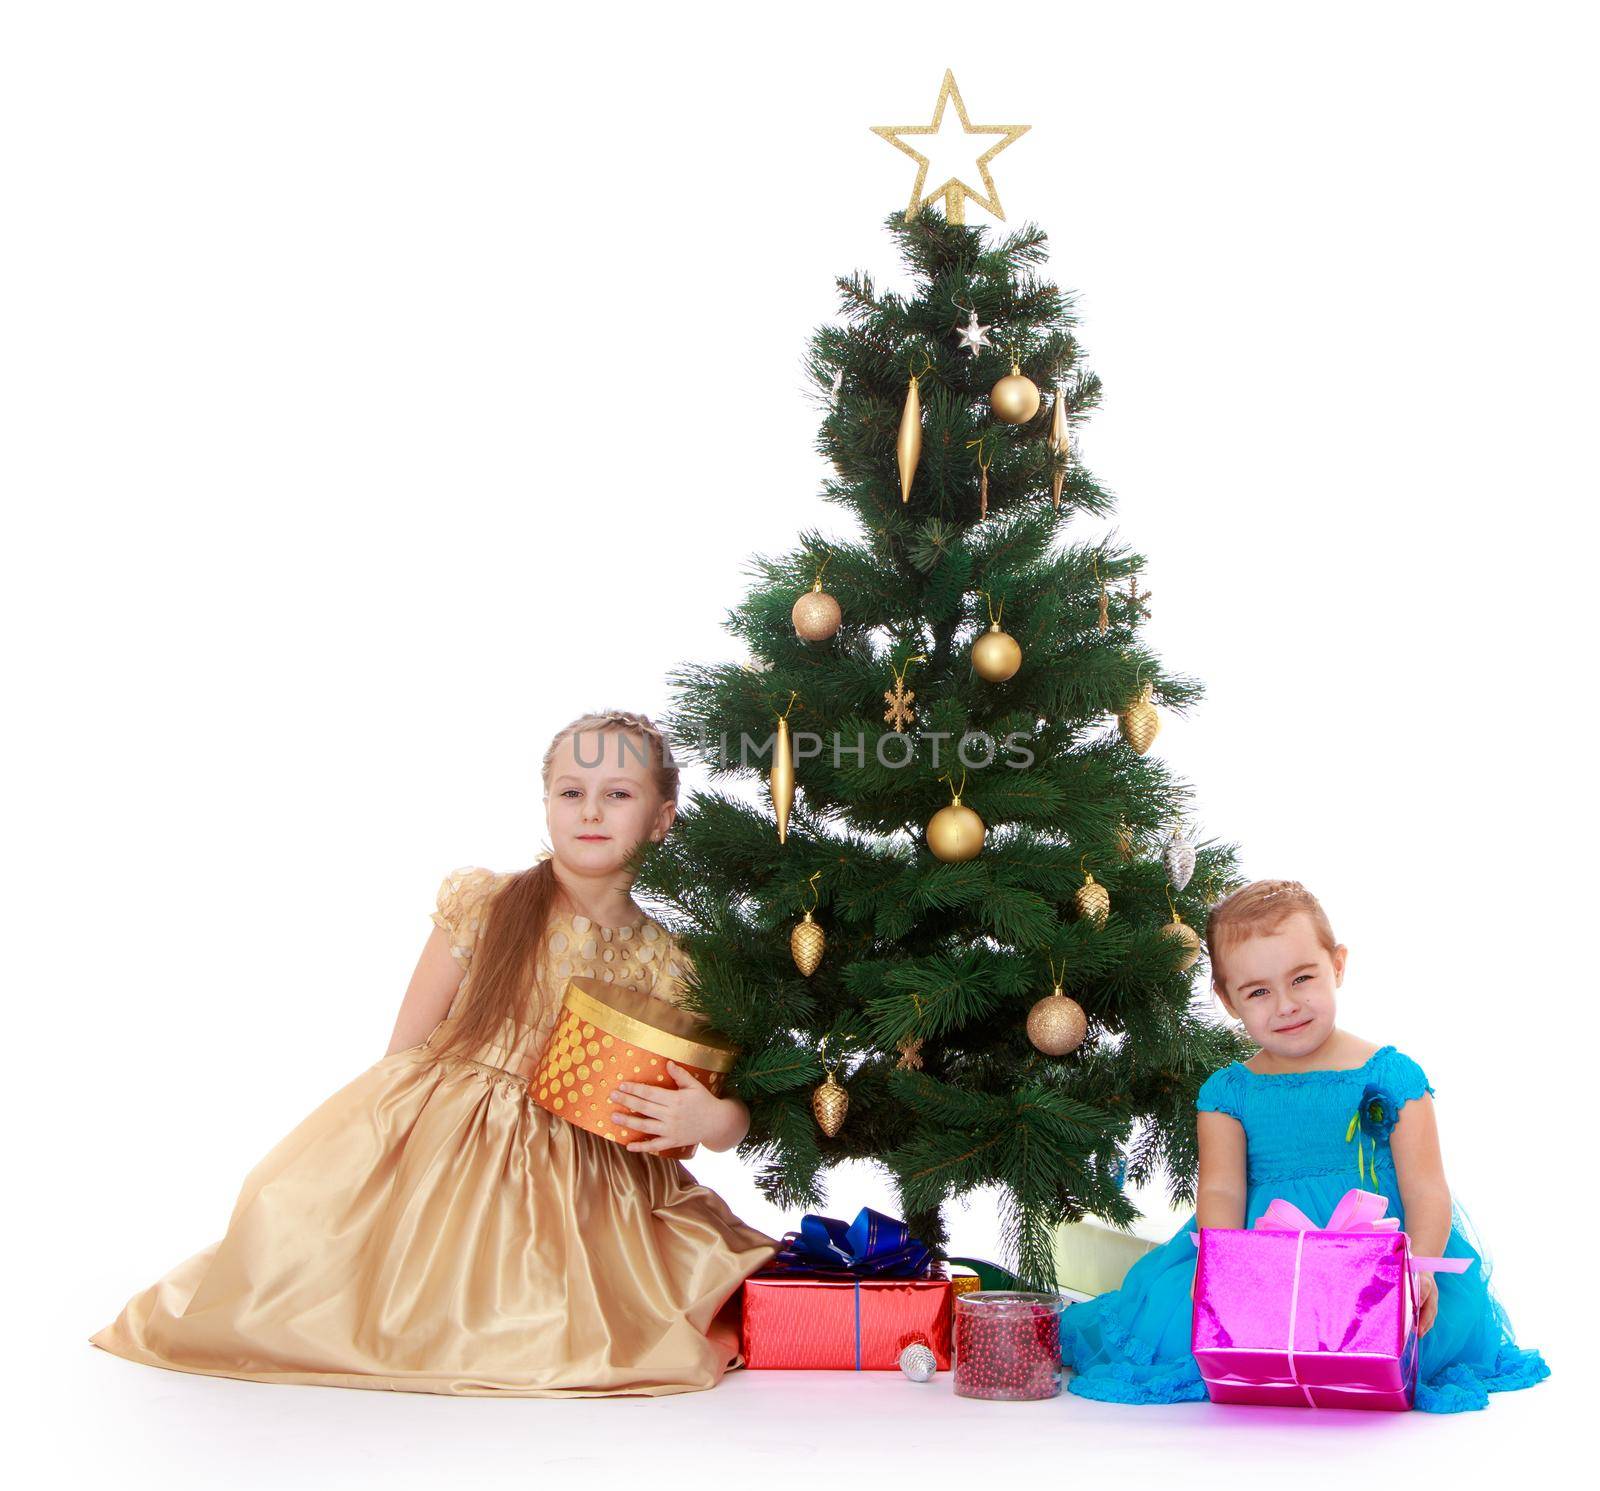 girl near the Christmas tree by kolesnikov_studio